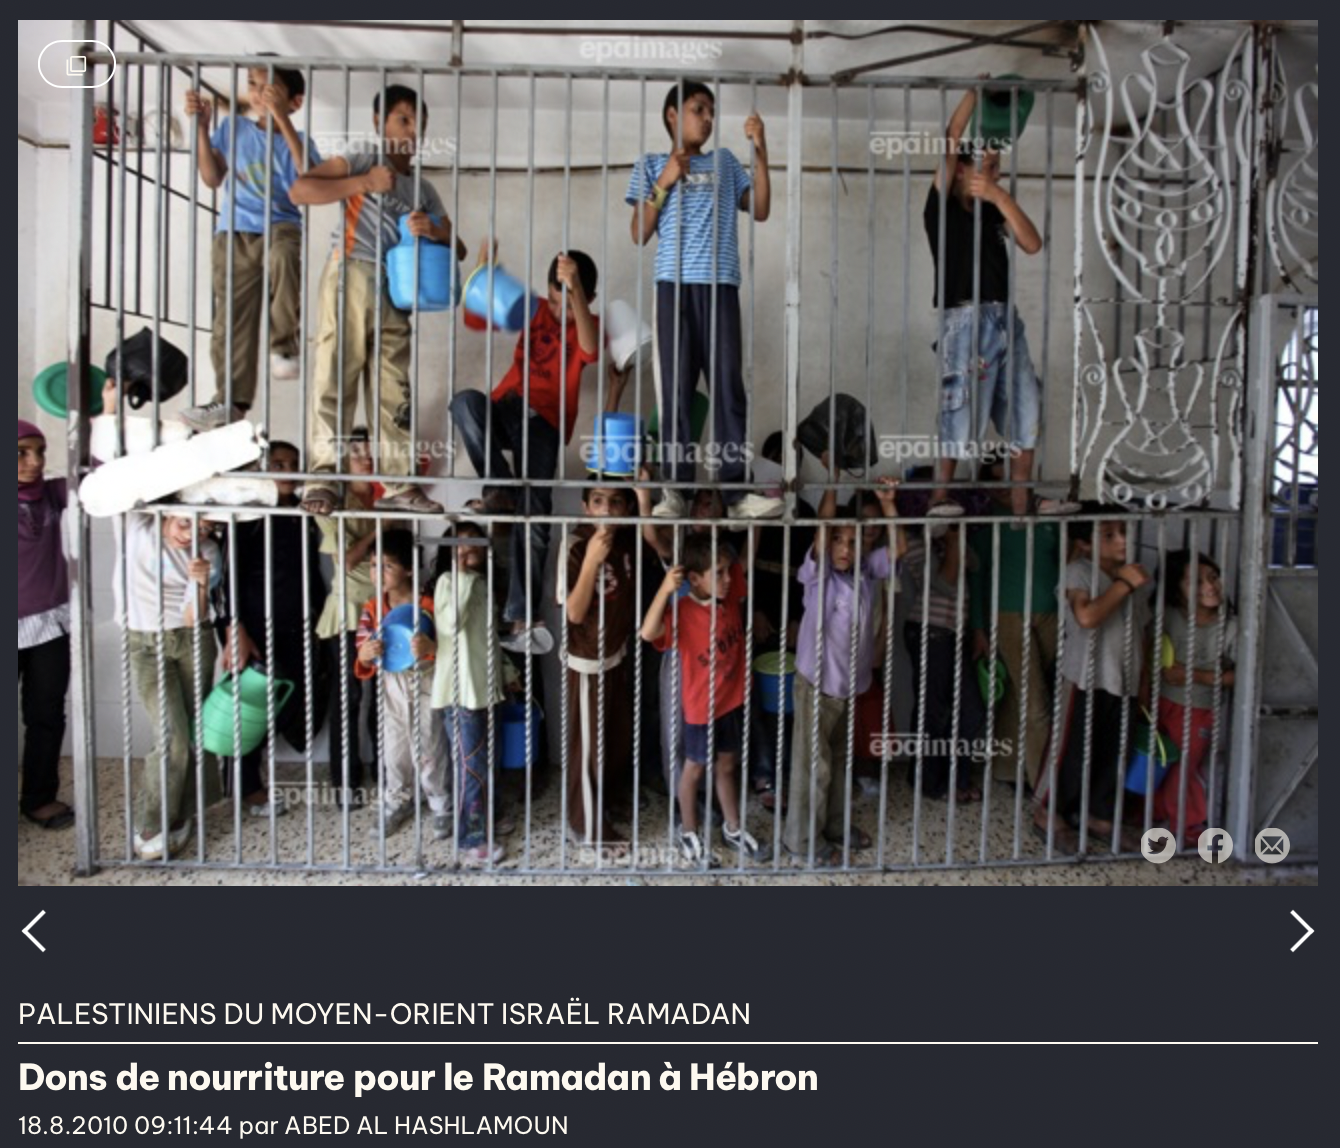 Dies ist ein Screenshot des Originalfotos, das am 18. August 2010 von der europäischen Pressefotoagentur EPA veröffentlicht wurde. Es wurde in einer Suppenküche in Hebron im Westjordanland aufgenommen.